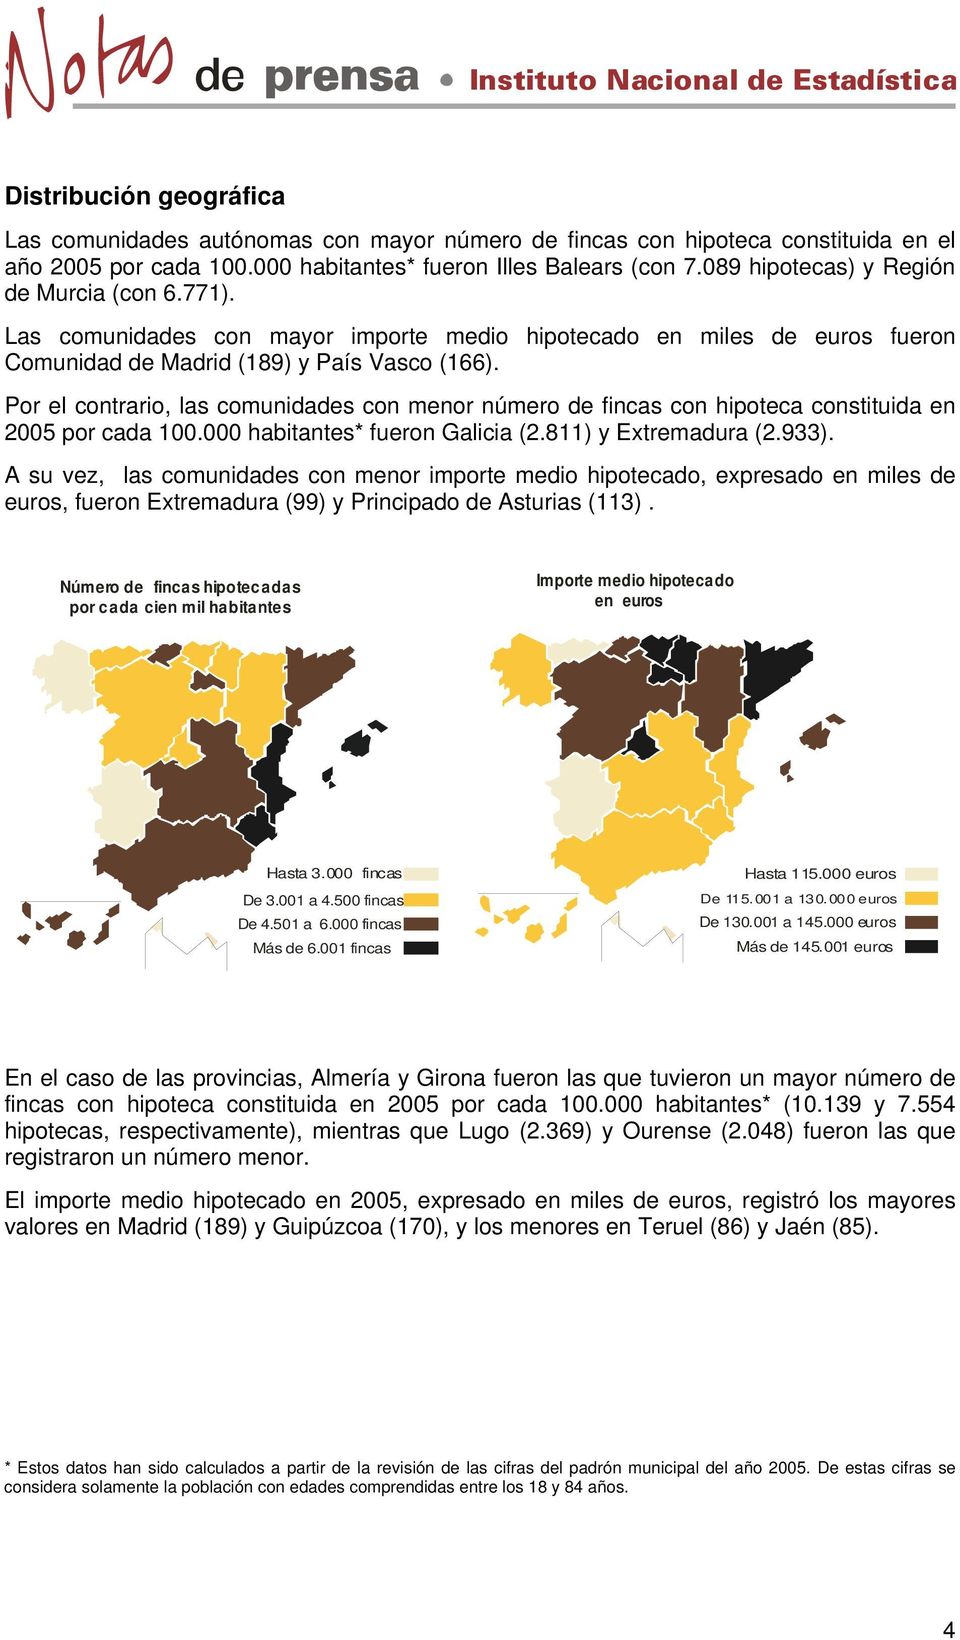 Por el contrario, las comunidades con menor número de fincas con hipoteca constituida en 2005 por cada 100.000 habitantes* fueron Galicia (2.811) y Extremadura (2.933).